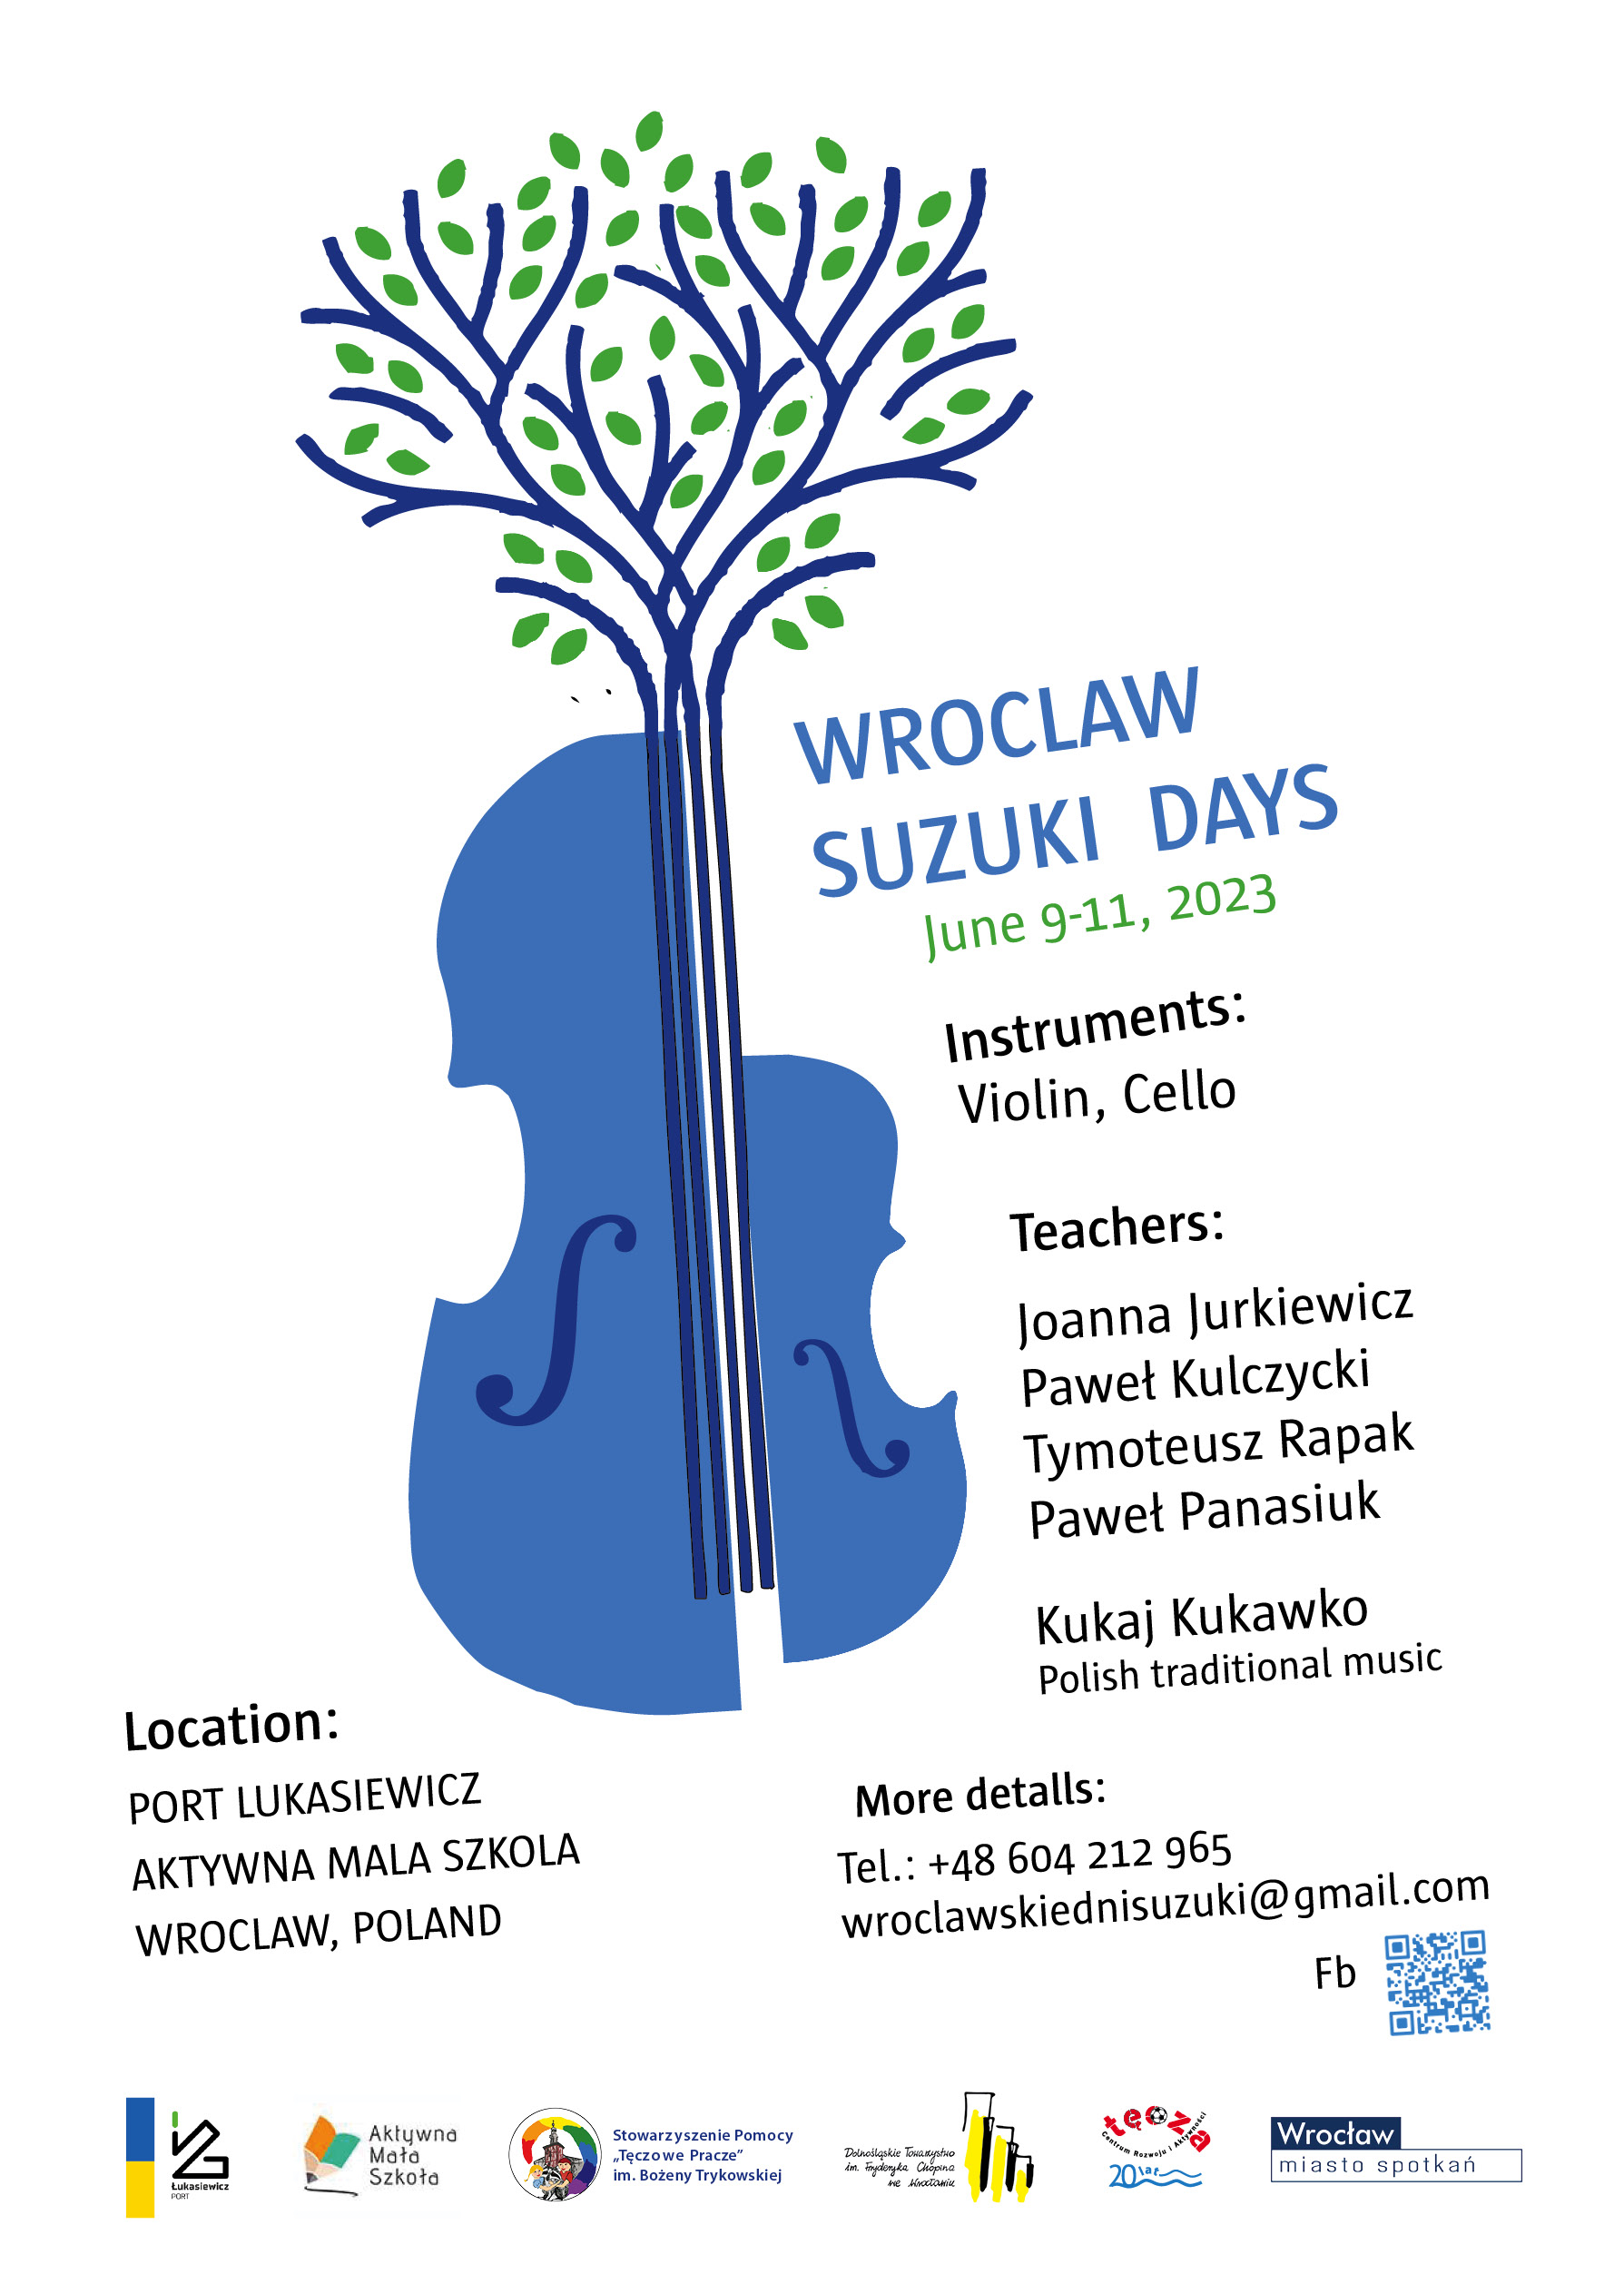 Wroclaw SUZUKI™ Days POLAND